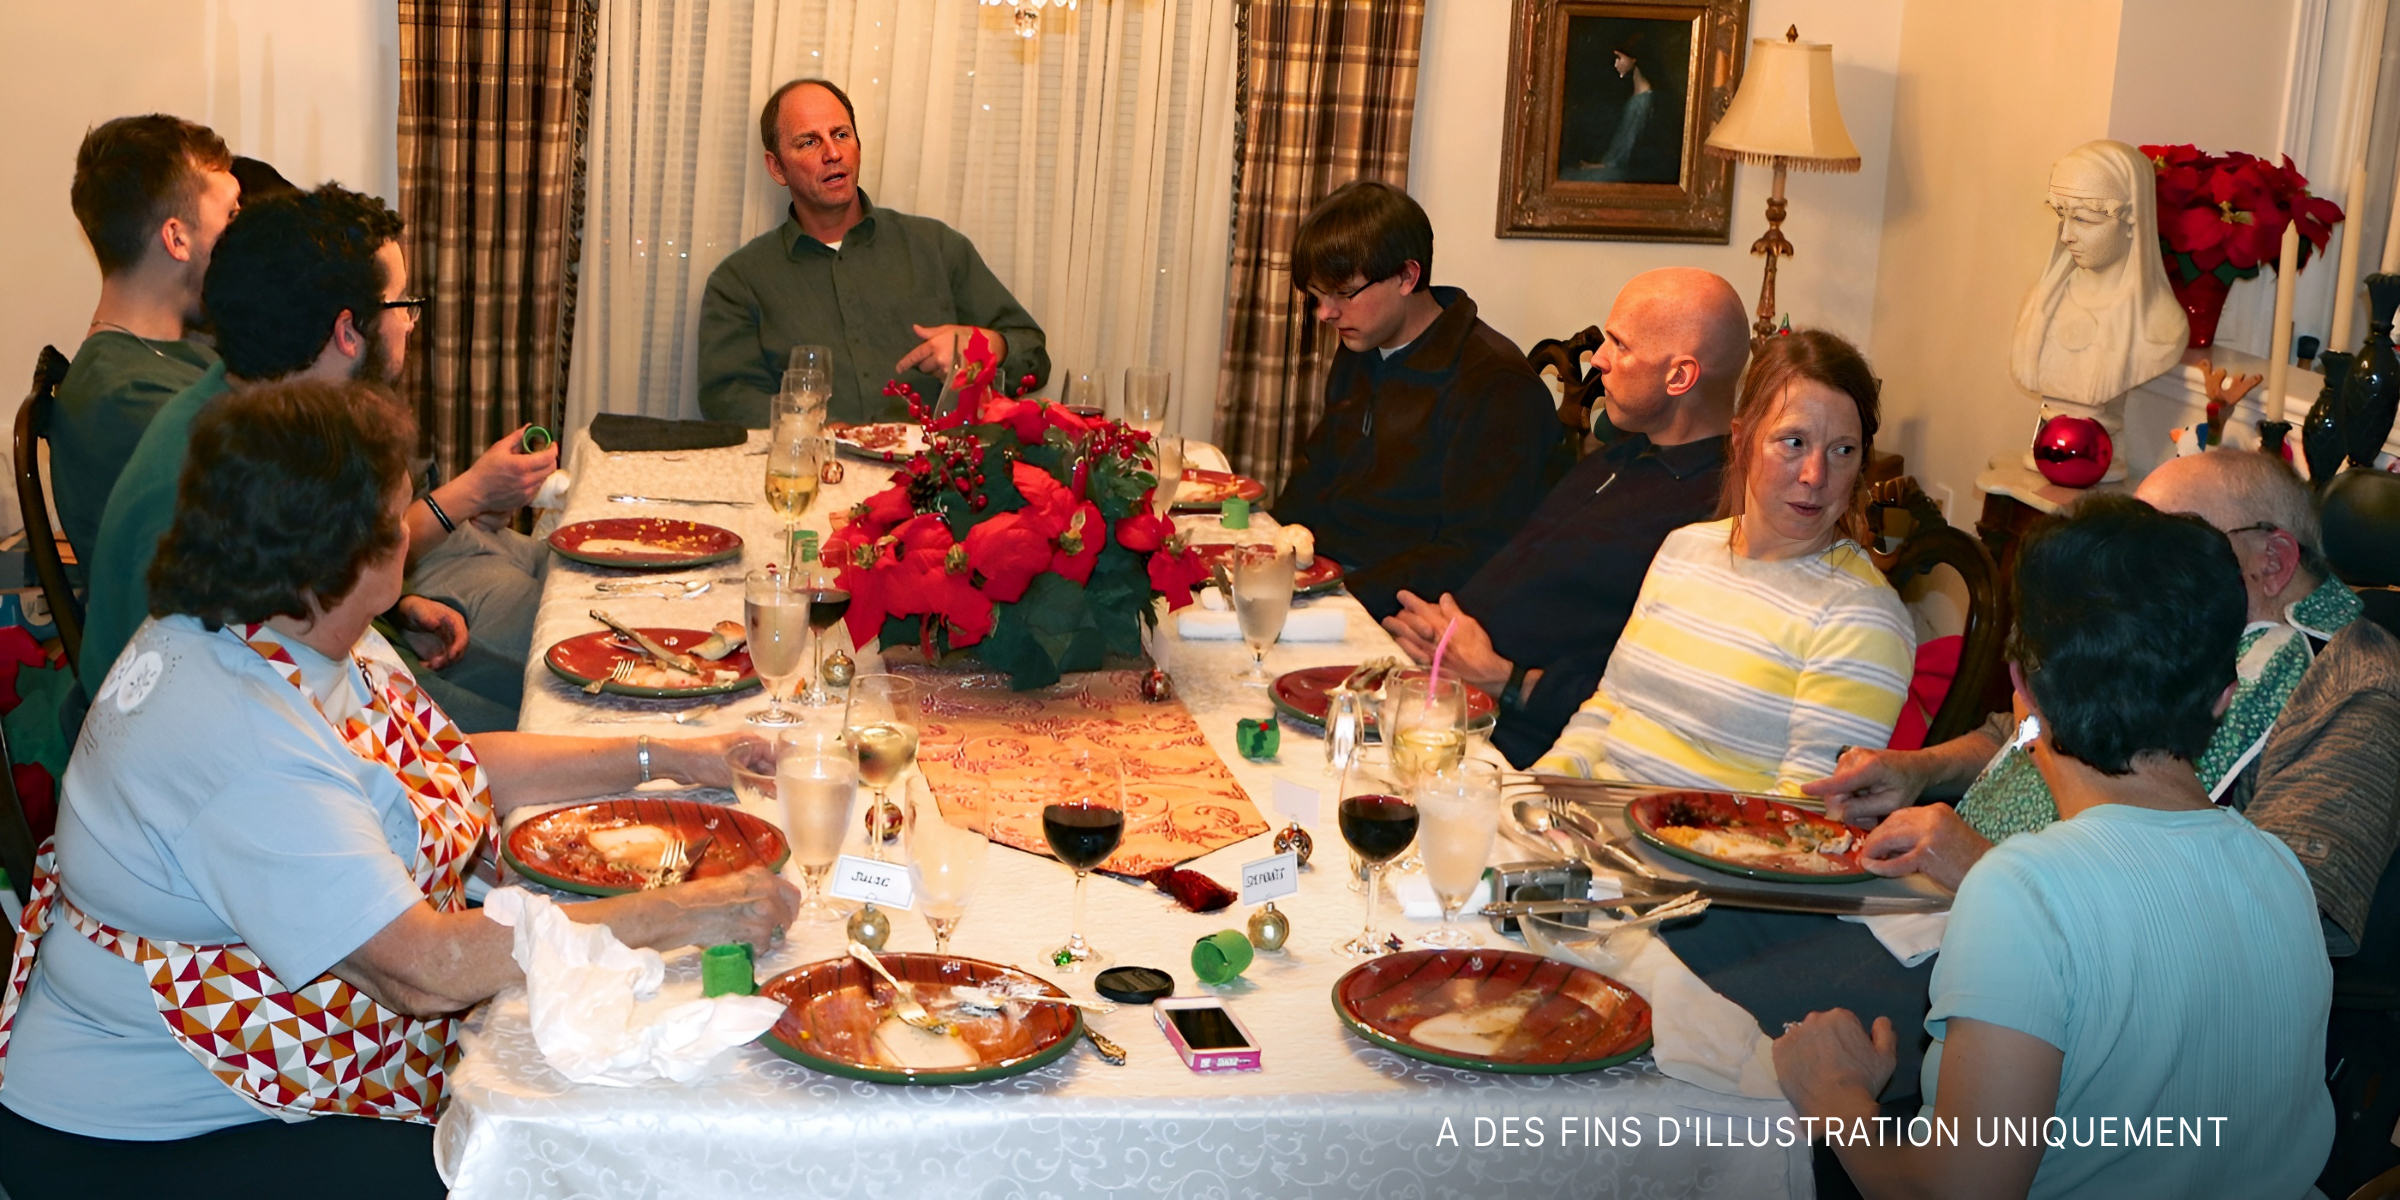 Une famille prenant un repas à table | Source : Flickr.com/OakleyOriginals/CC BY 2.0